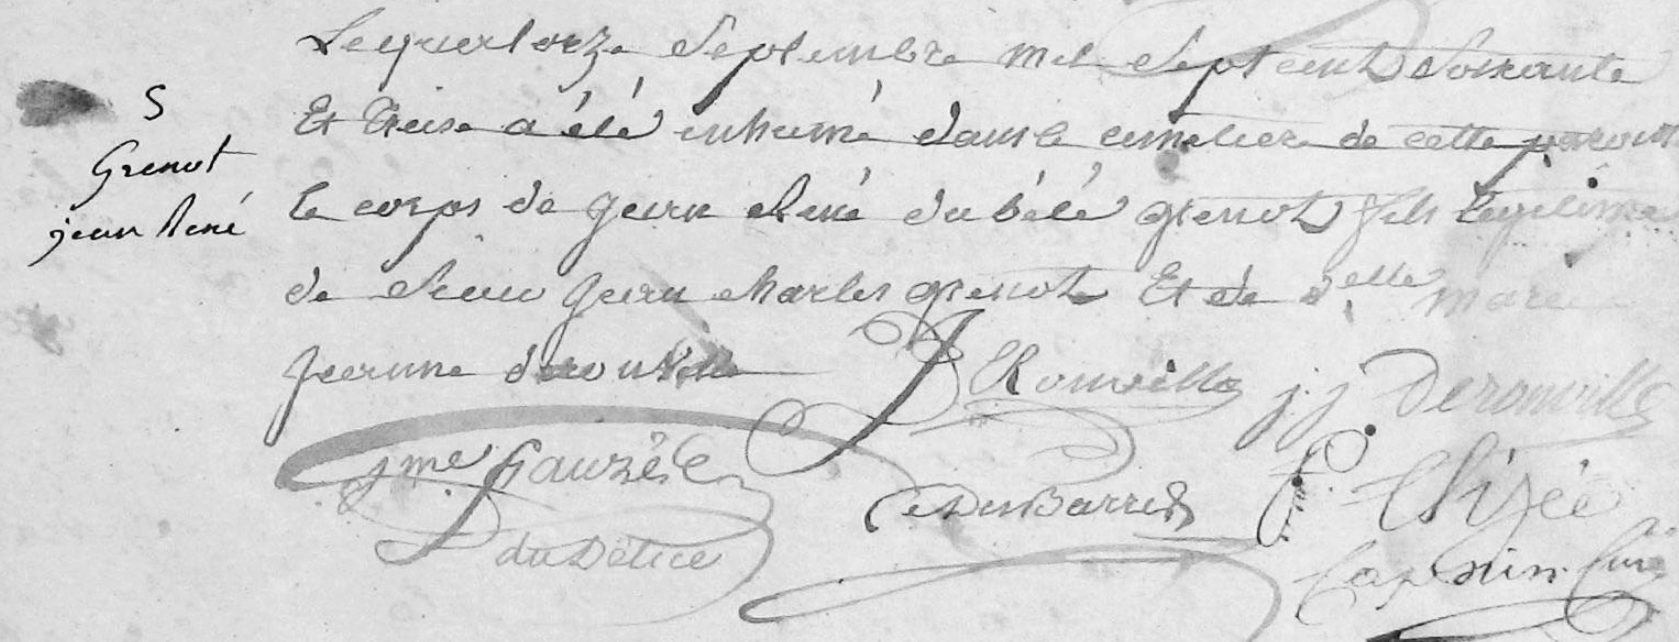 Signatures de Jean Jacques et son pre Jean Deronville.